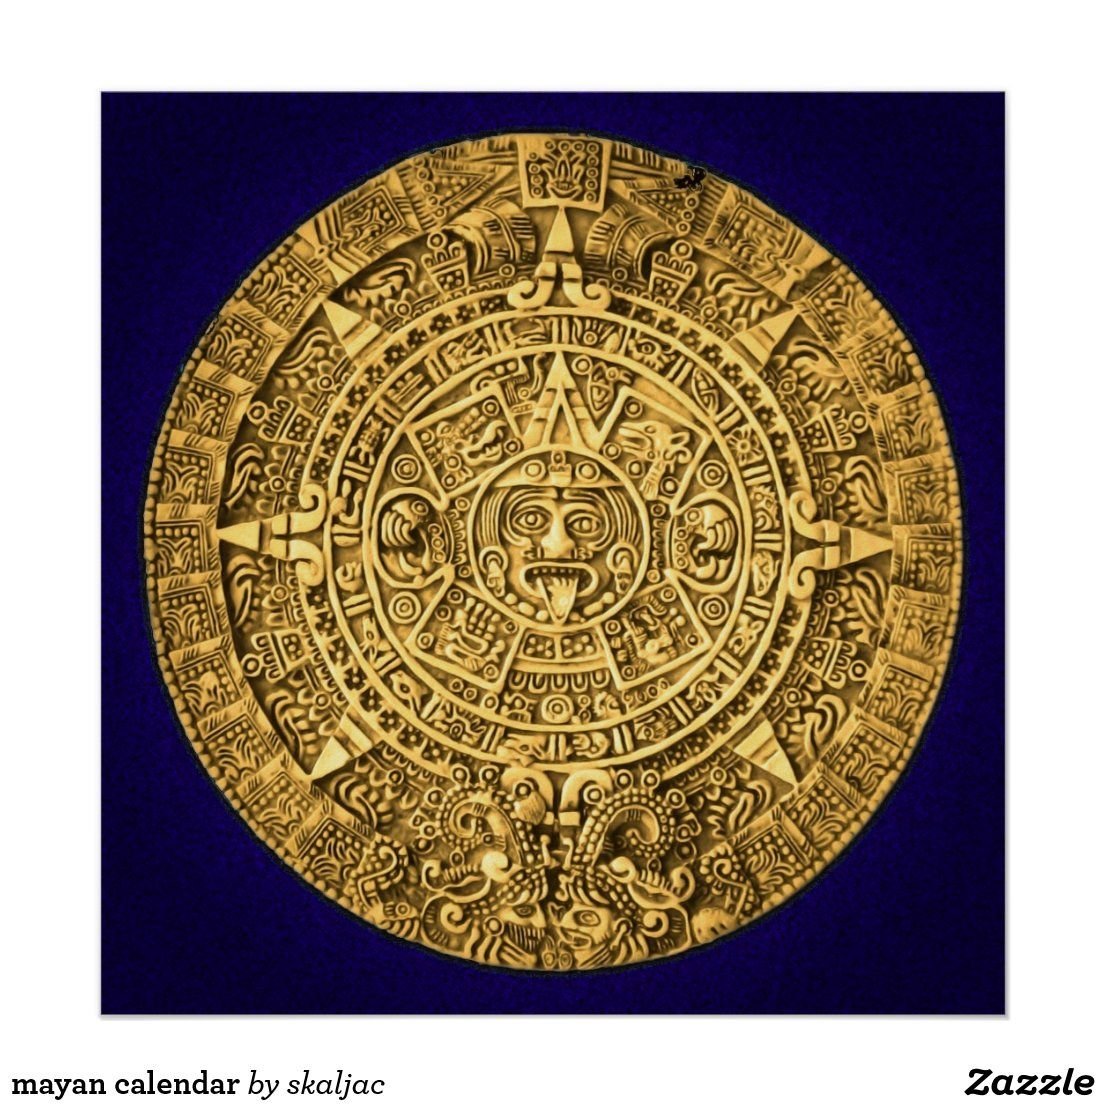 Смысл названия произведения календарь ма й я. Ацтекский камень солнца. Солнечный календарь Майя. Календарь ацтеков. Солнечный календарь Майя золото.